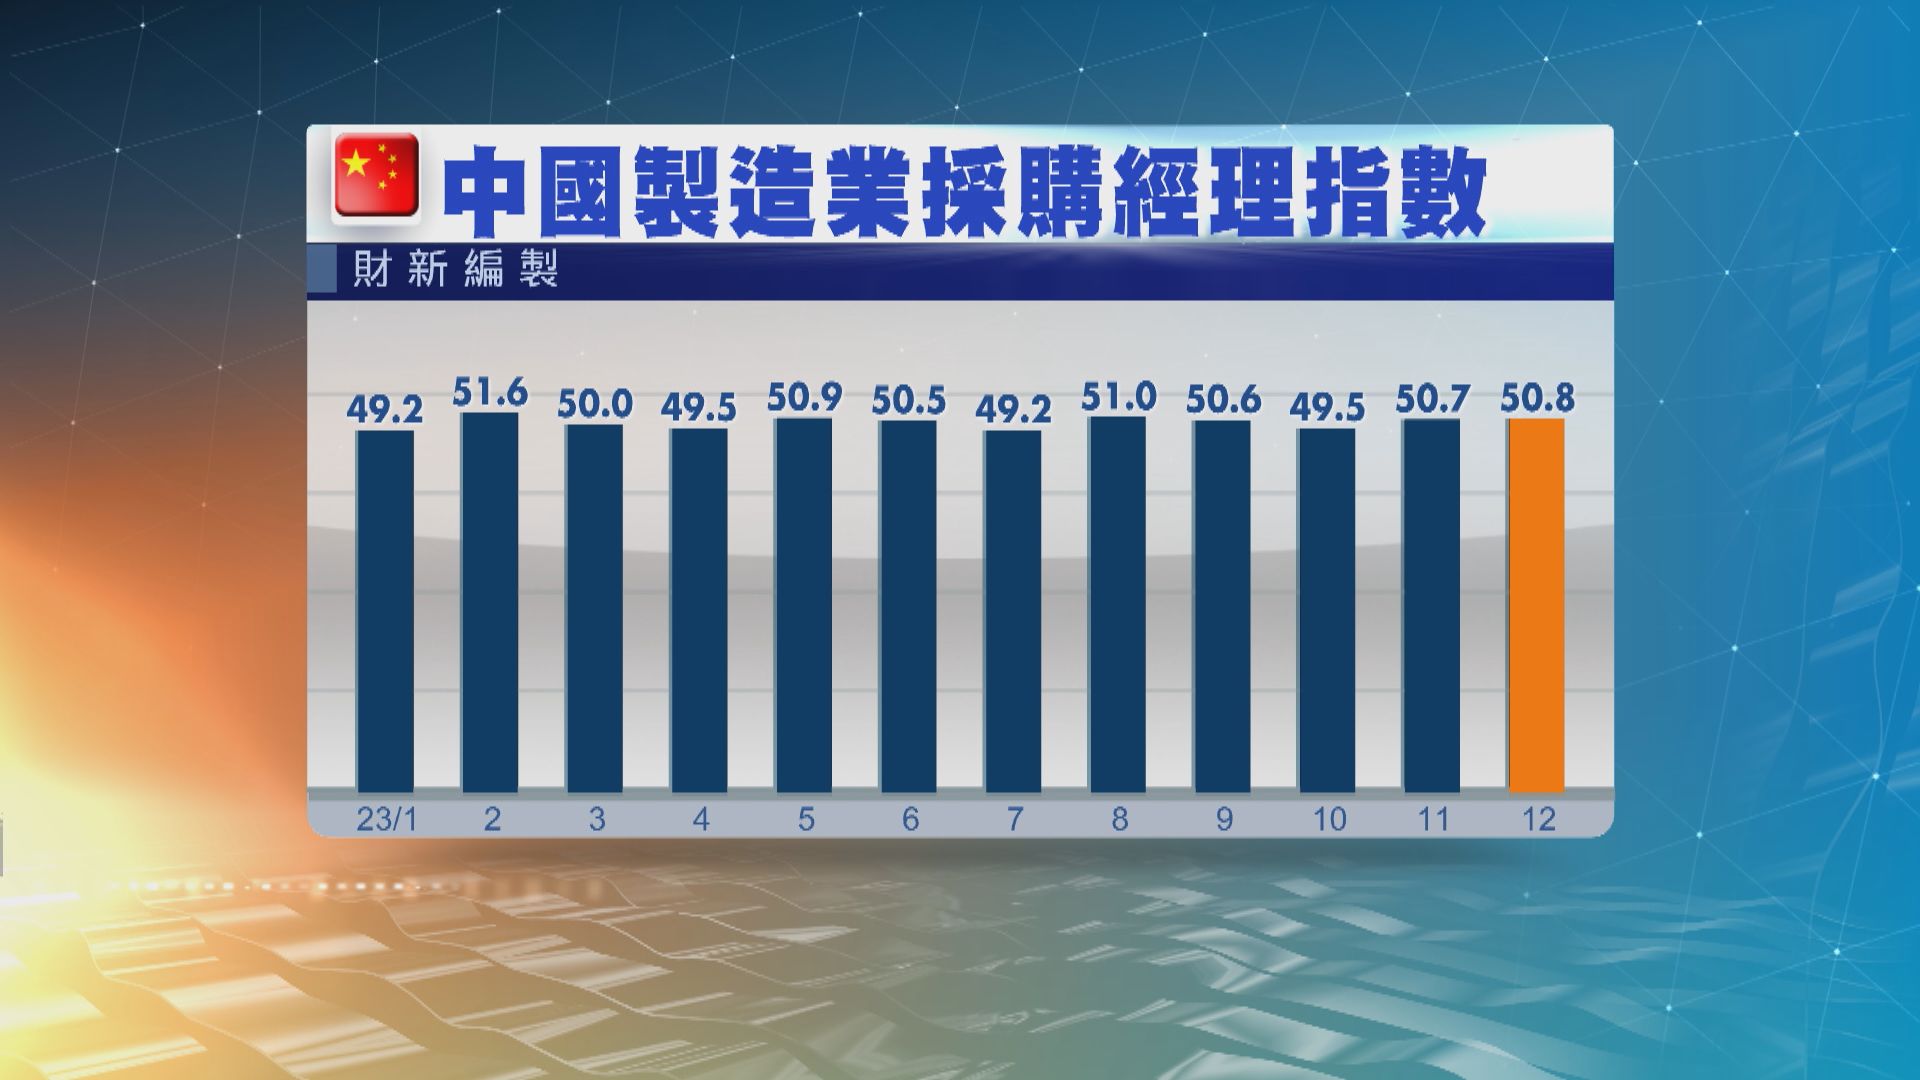 【中國數據】上月財新製造業PMI 50.8 勝預期